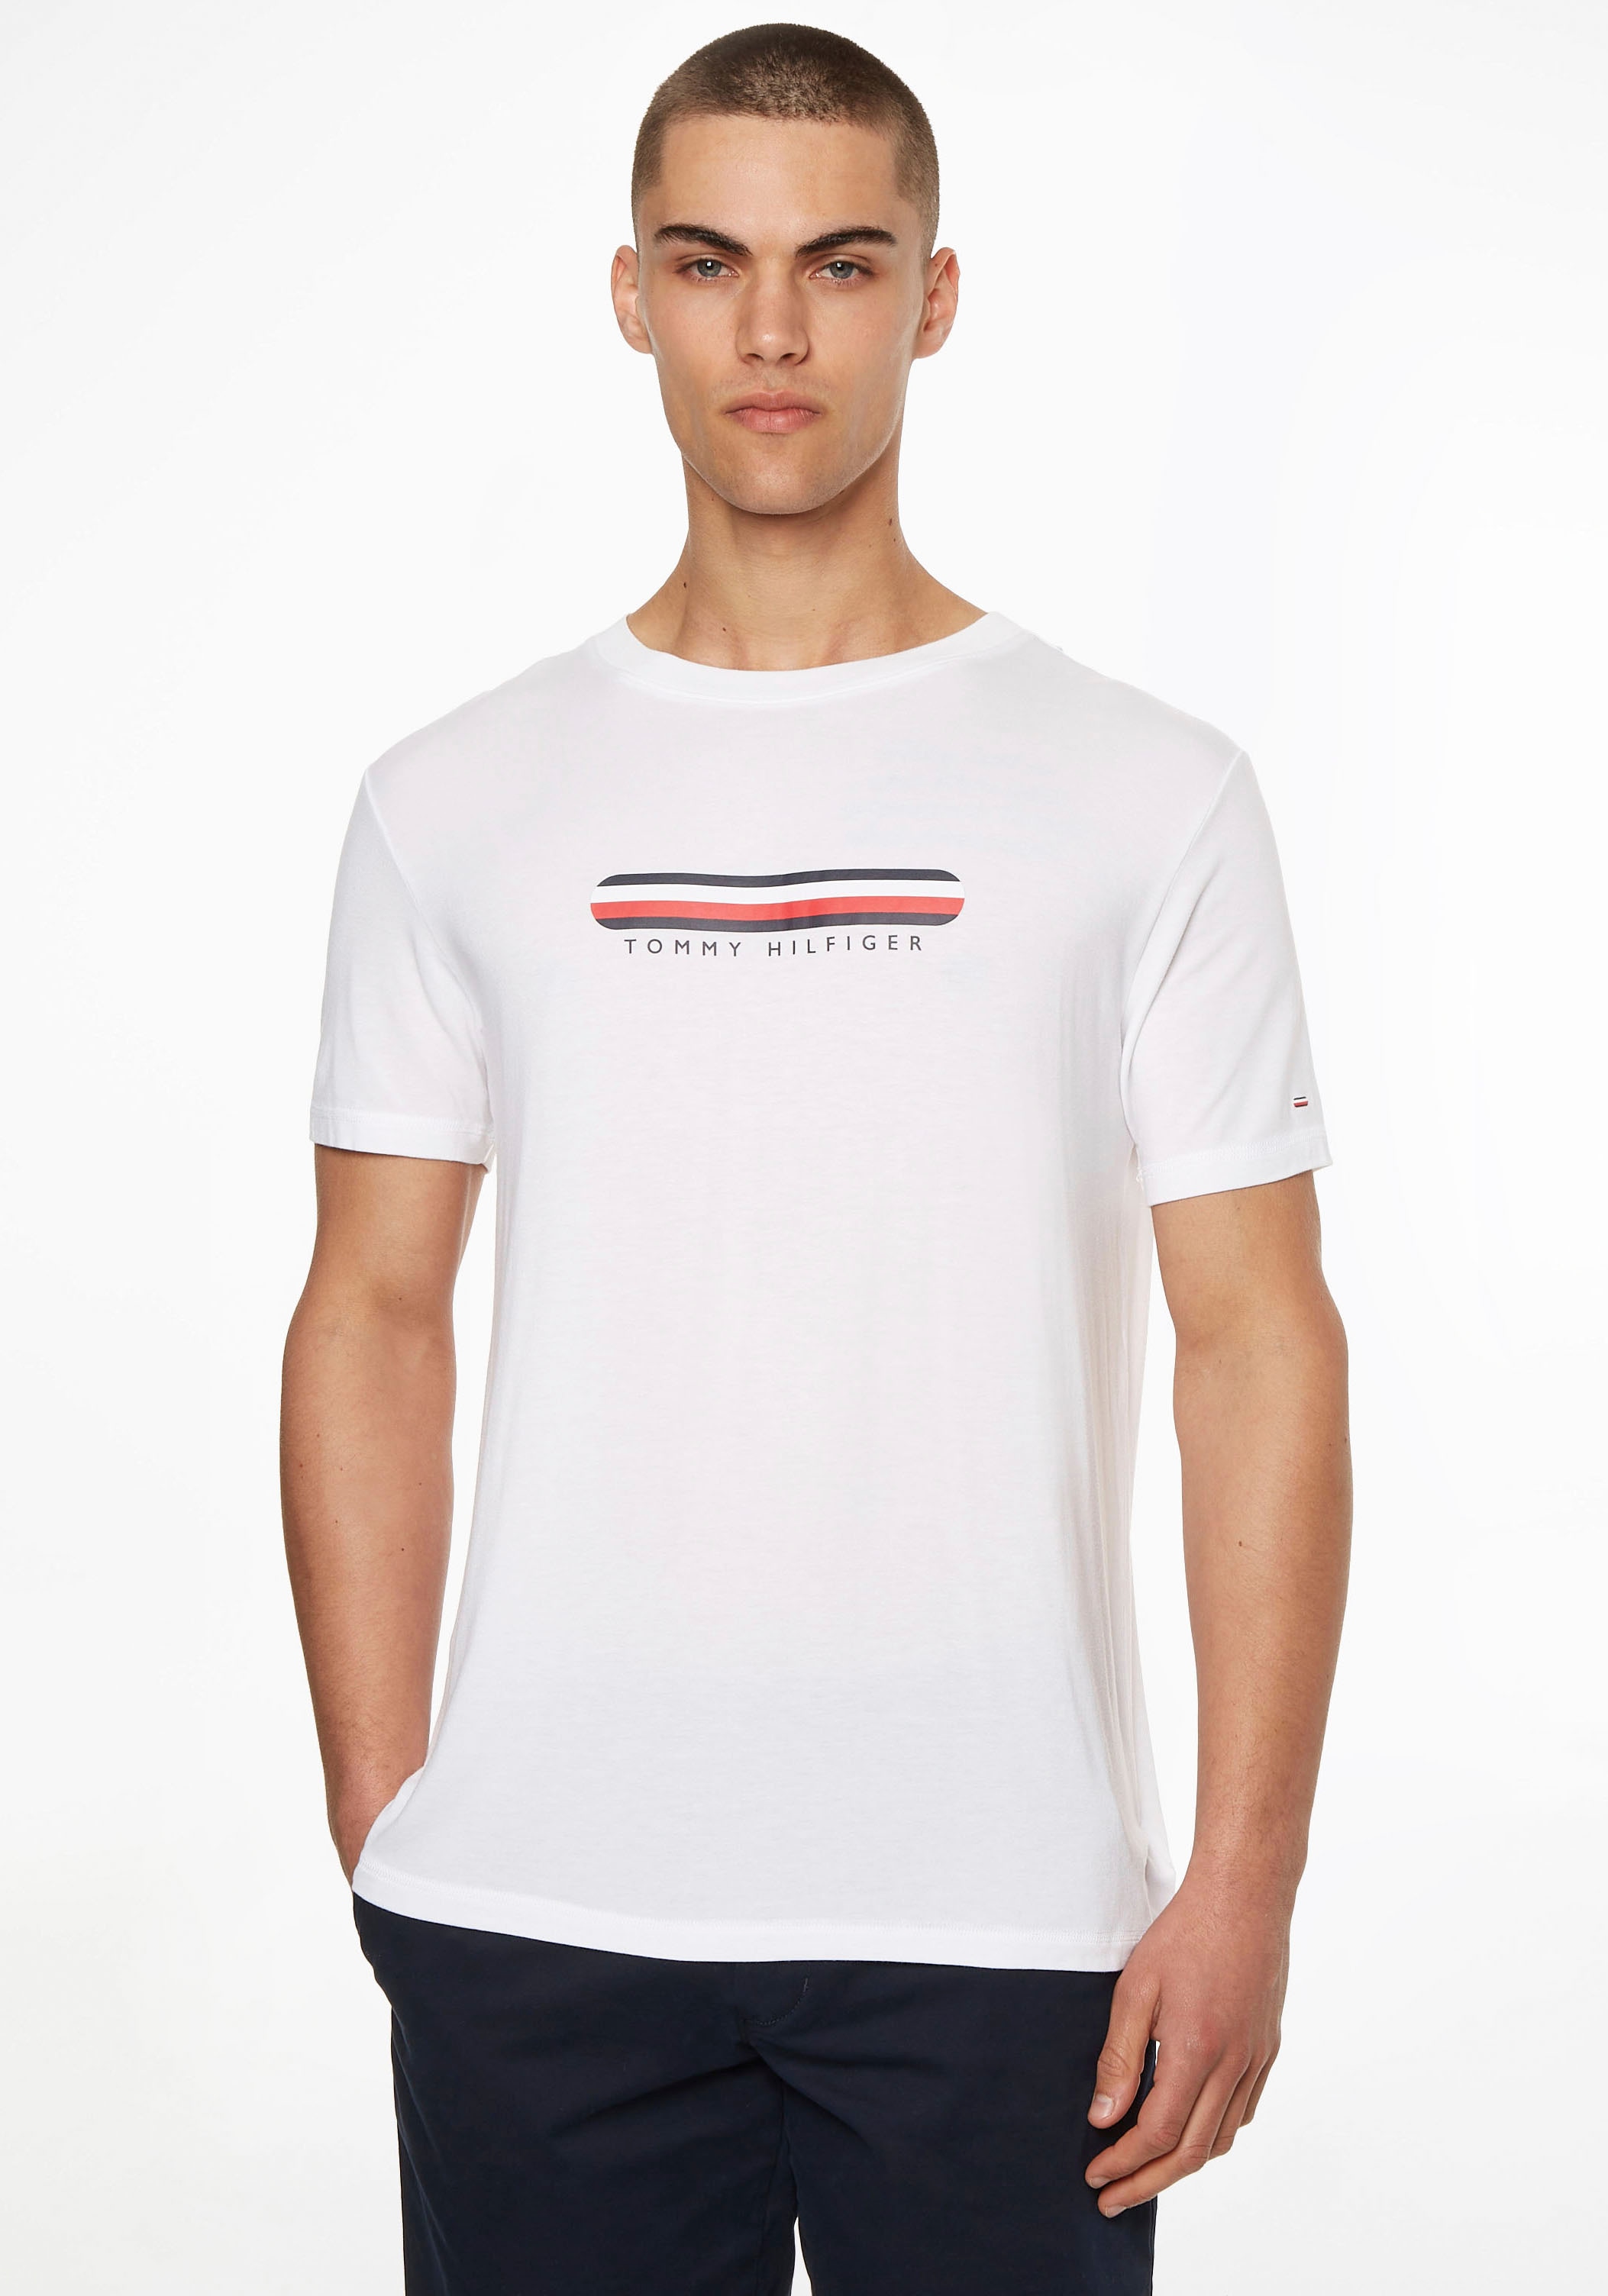 Tommy Hilfiger Underwear T-Shirt, mit Tommy Hilfiger Logo-Schriftzug auf der Brust